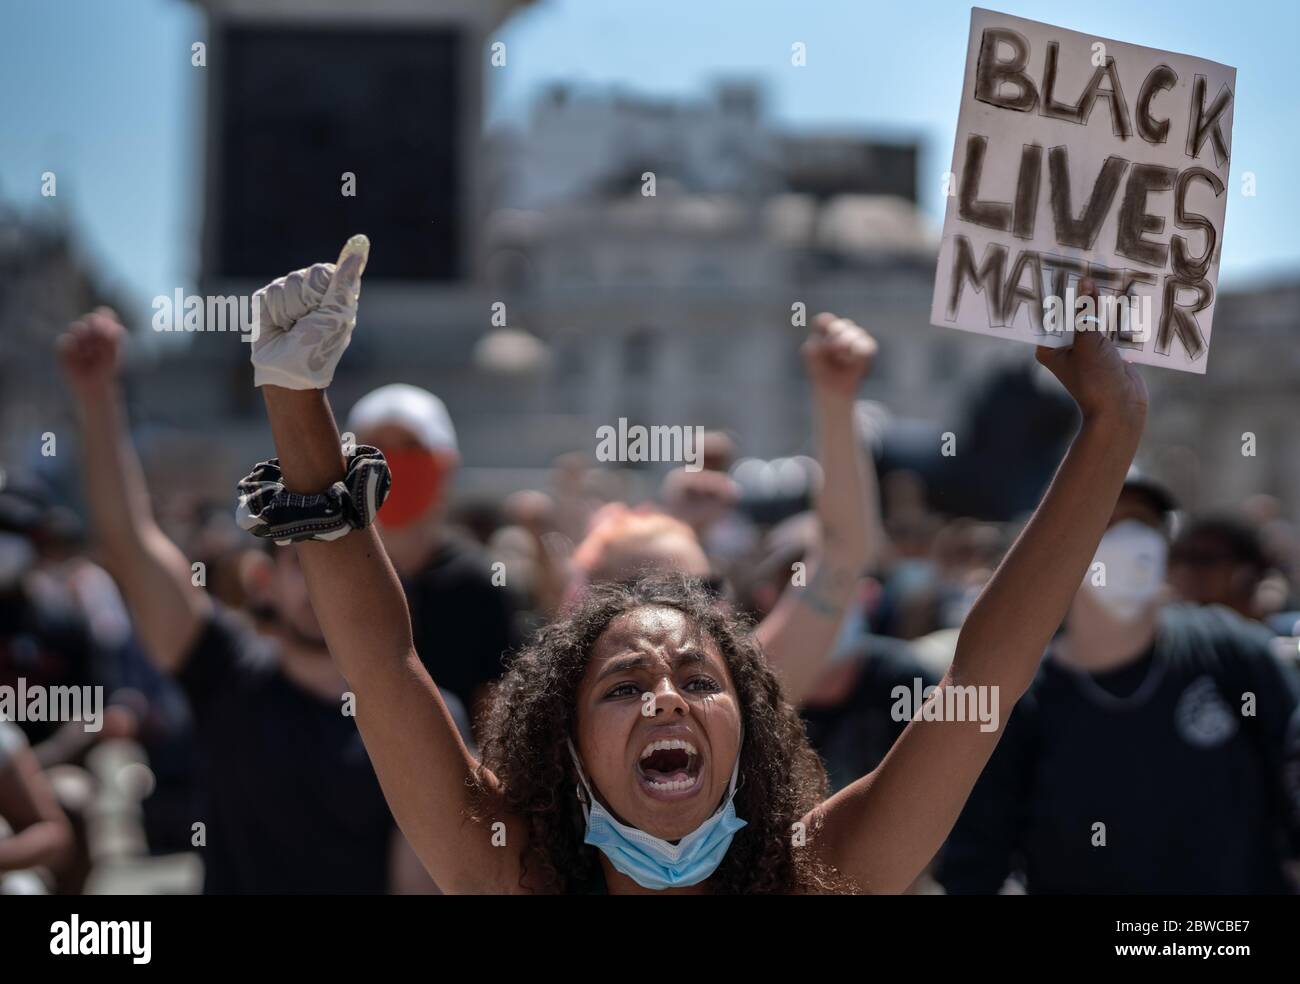 Migliaia di attivisti e sostenitori della Black Lives Matter (BLM) si riuniscono a Trafalgar Square, Londra, per protestare contro la morte di George Floyd negli Stati Uniti. Foto Stock